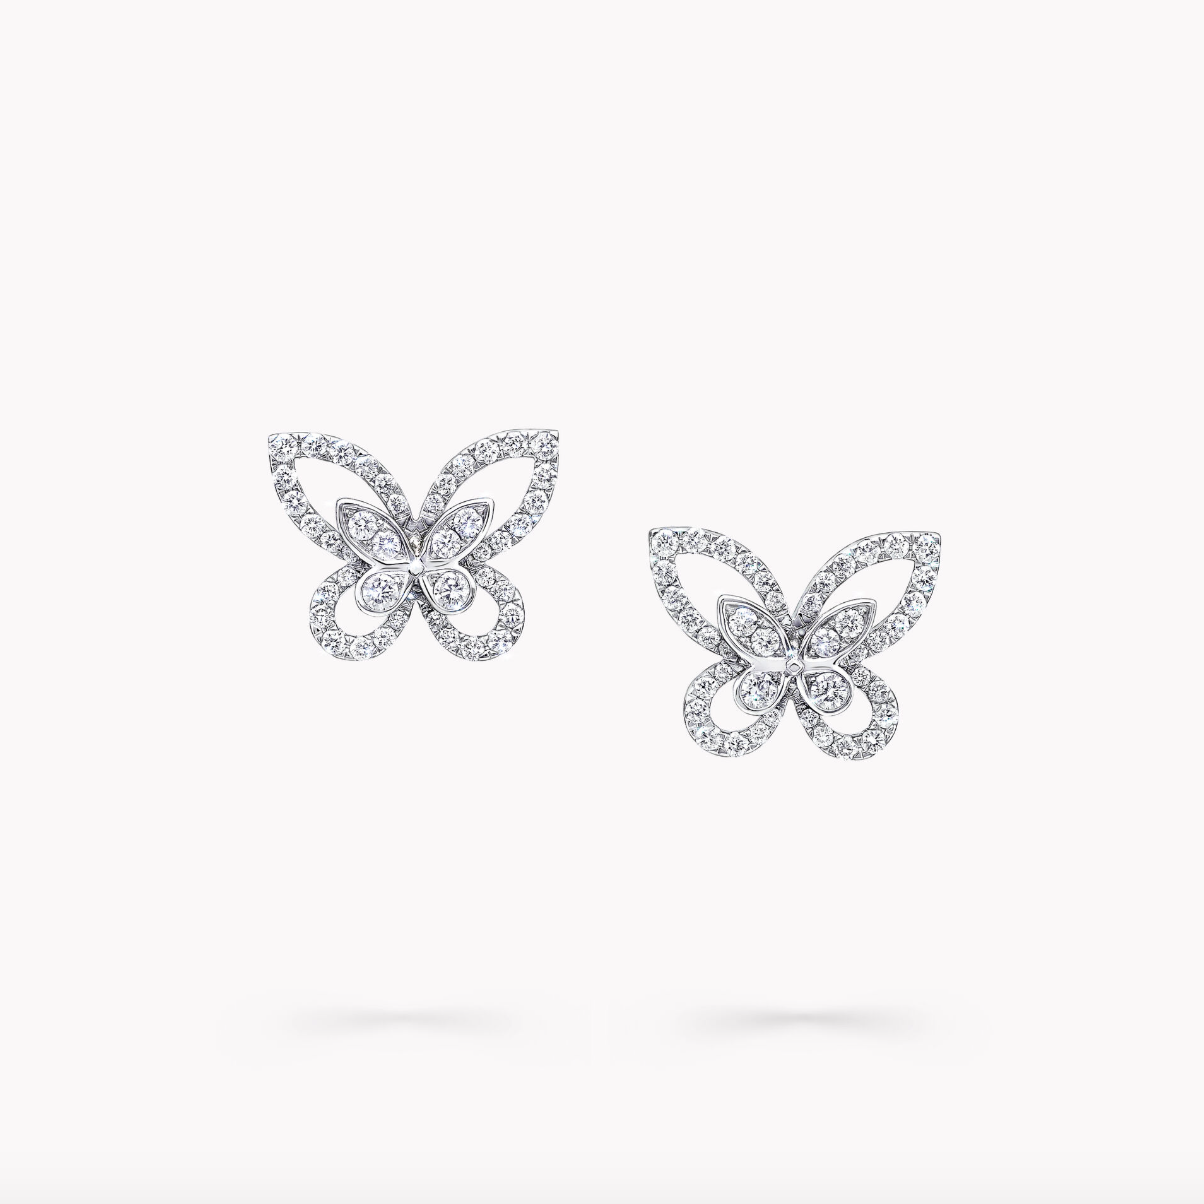 Butterfly Silhouette Pierced Screw Back Studs, Bridal Earrings in Silver by Margalit Rings